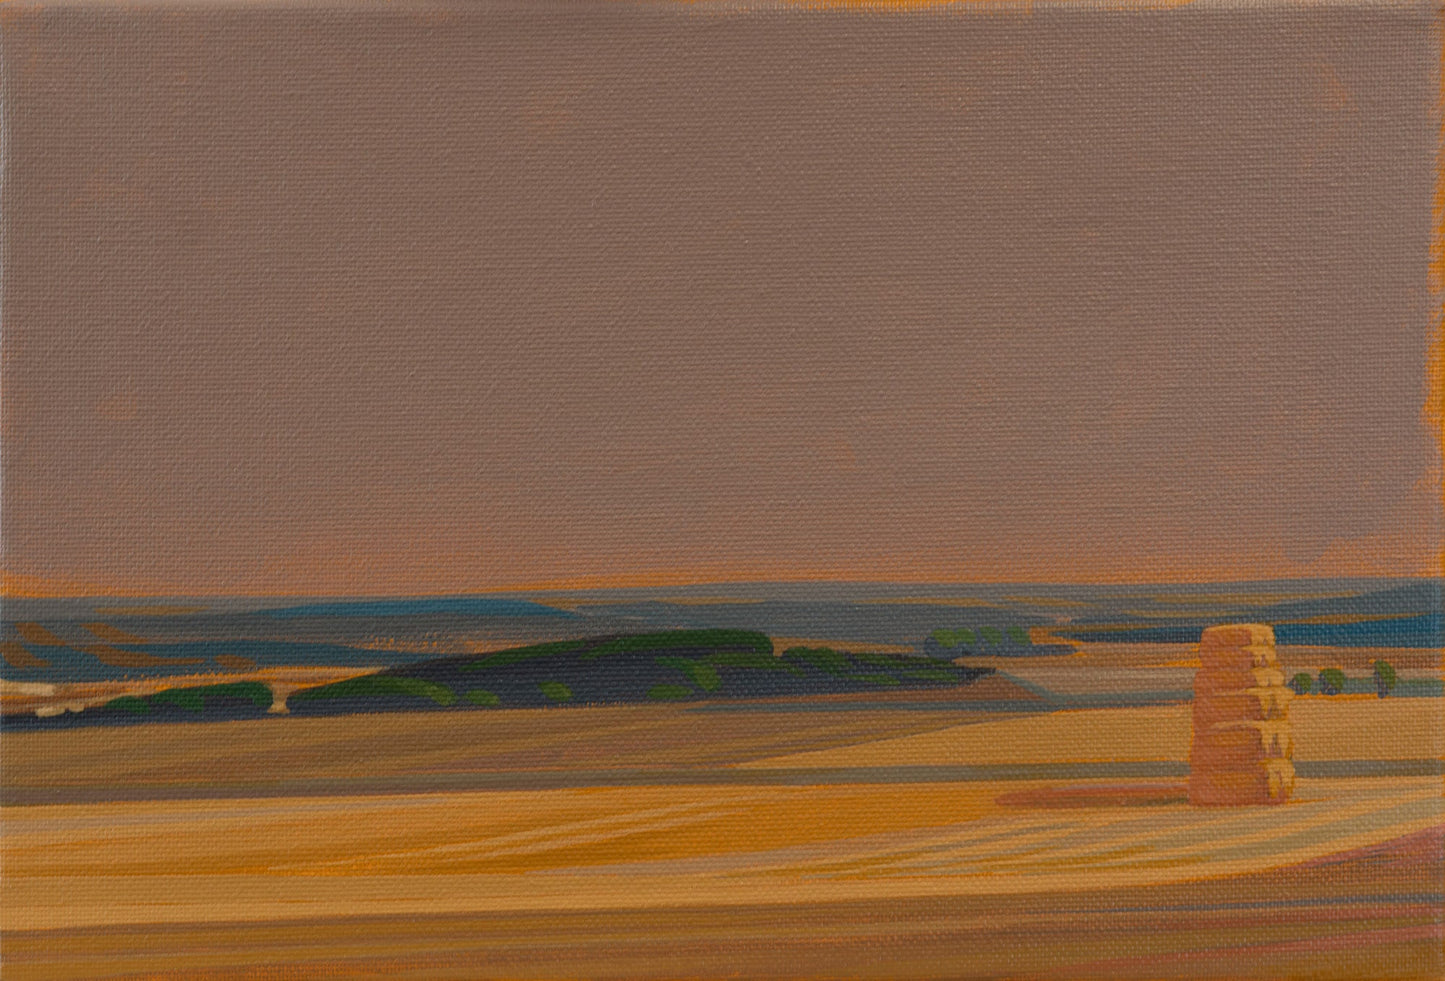 Leinwandbild – Brillanter Kunstdruck – 20x30 cm – uv-beständig – Landschaft mit Feldern